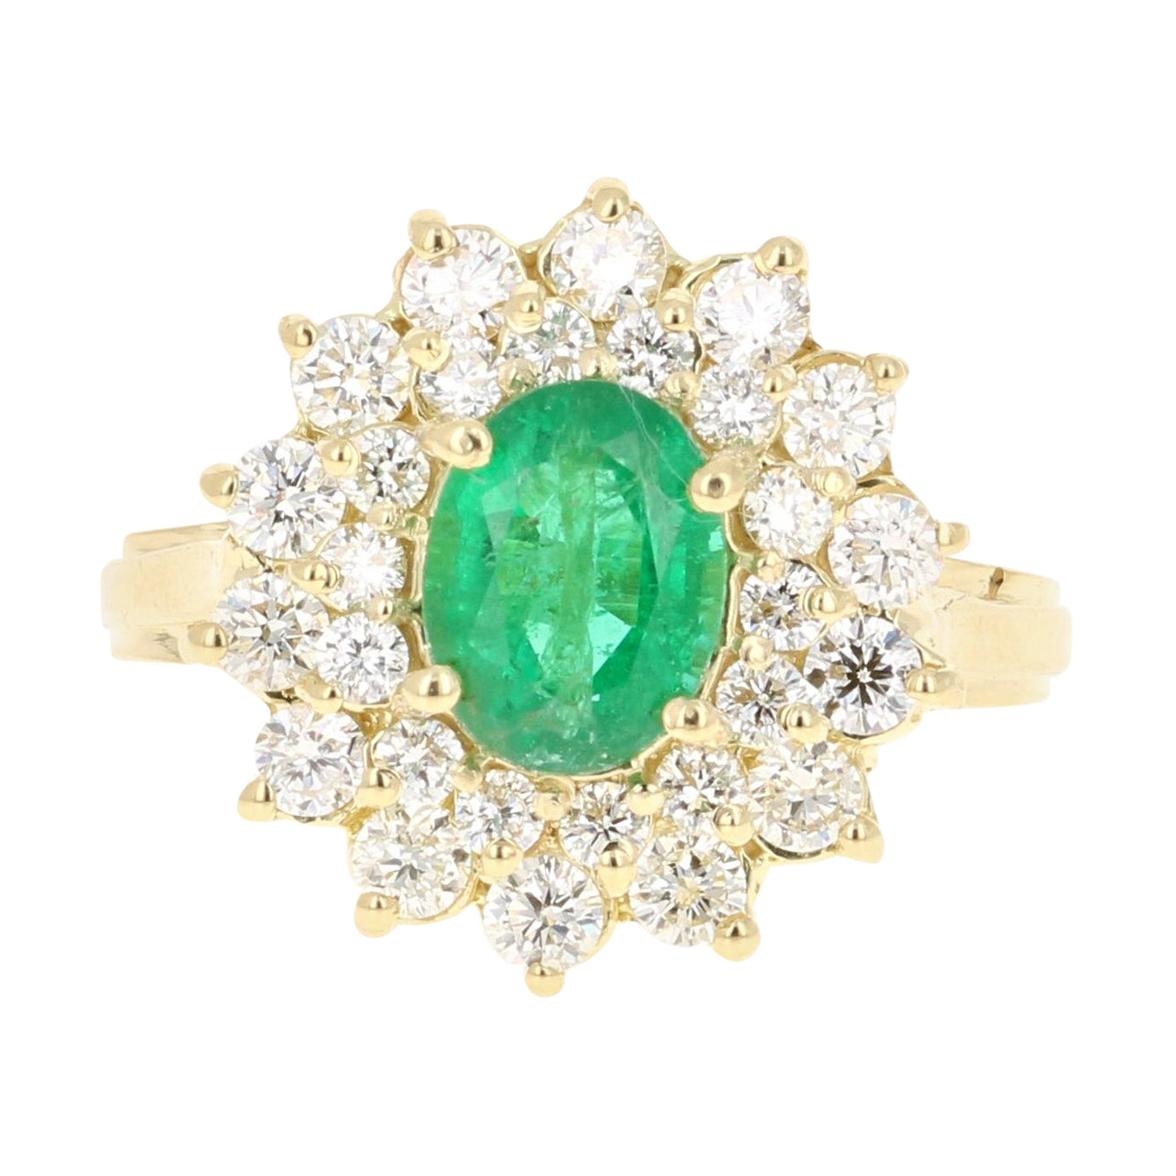 GIA Certified 2.54 Carat Emerald Diamond 18 Karat Yellow Gold Engagement Ring